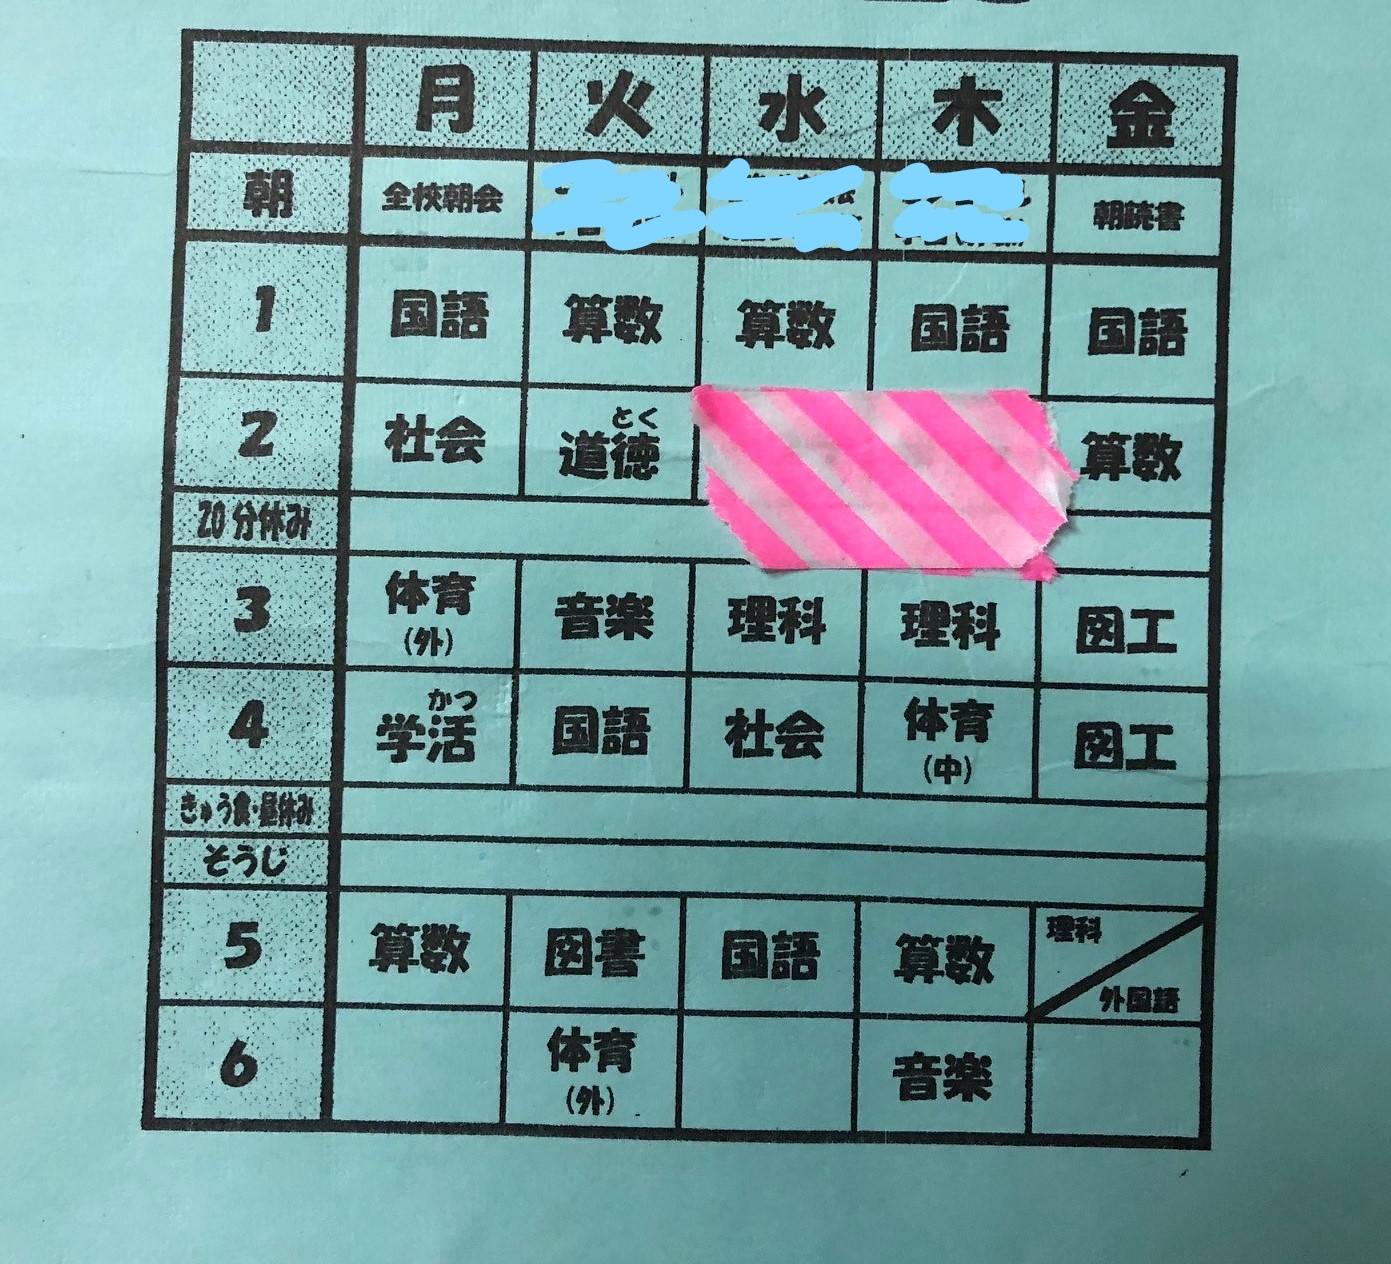 小学3年生の時間割 漢字検定８級 英検５級合格の勉強方法 読書 ゲームをしながら英語とプログラミング学習 カナリのつれづれ日記